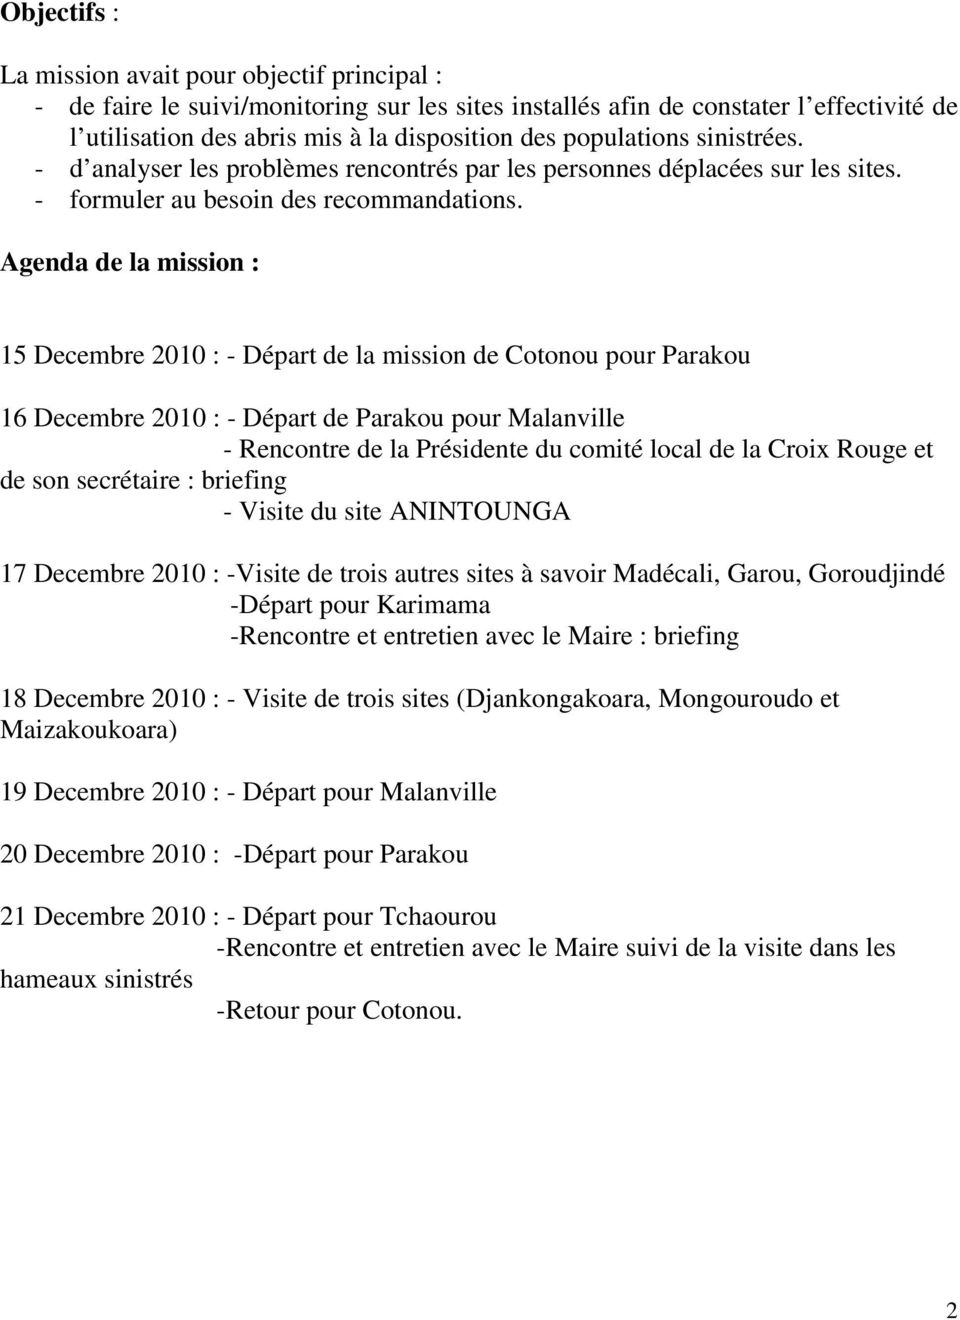 Agenda de la mission : 15 Decembre 2010 : - Départ de la mission de Cotonou pour Parakou 16 Decembre 2010 : - Départ de Parakou pour Malanville - Rencontre de la Présidente du comité local de la